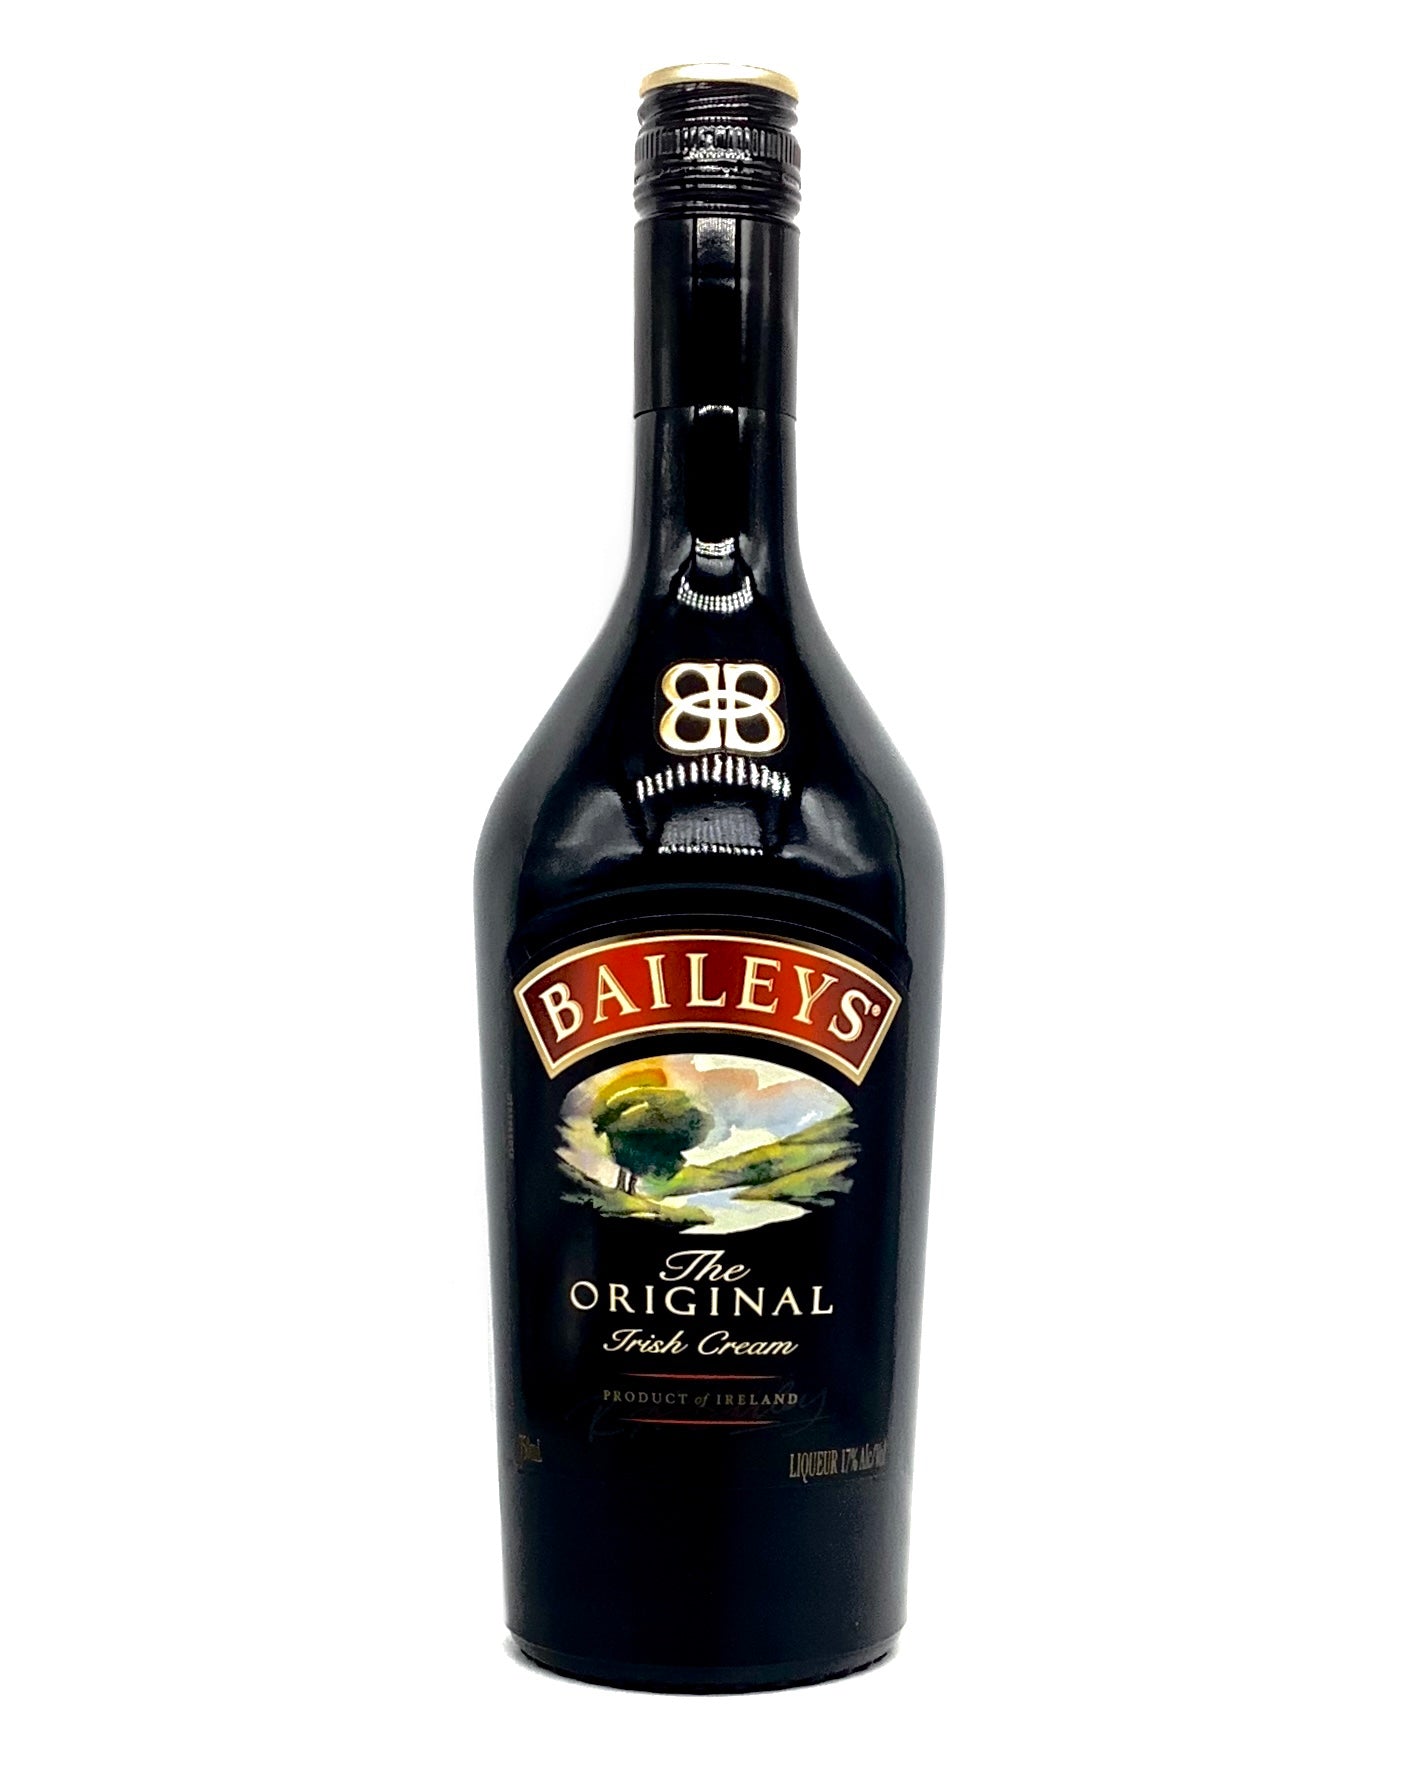 Baileys "The Original" Irish Cream 750ml